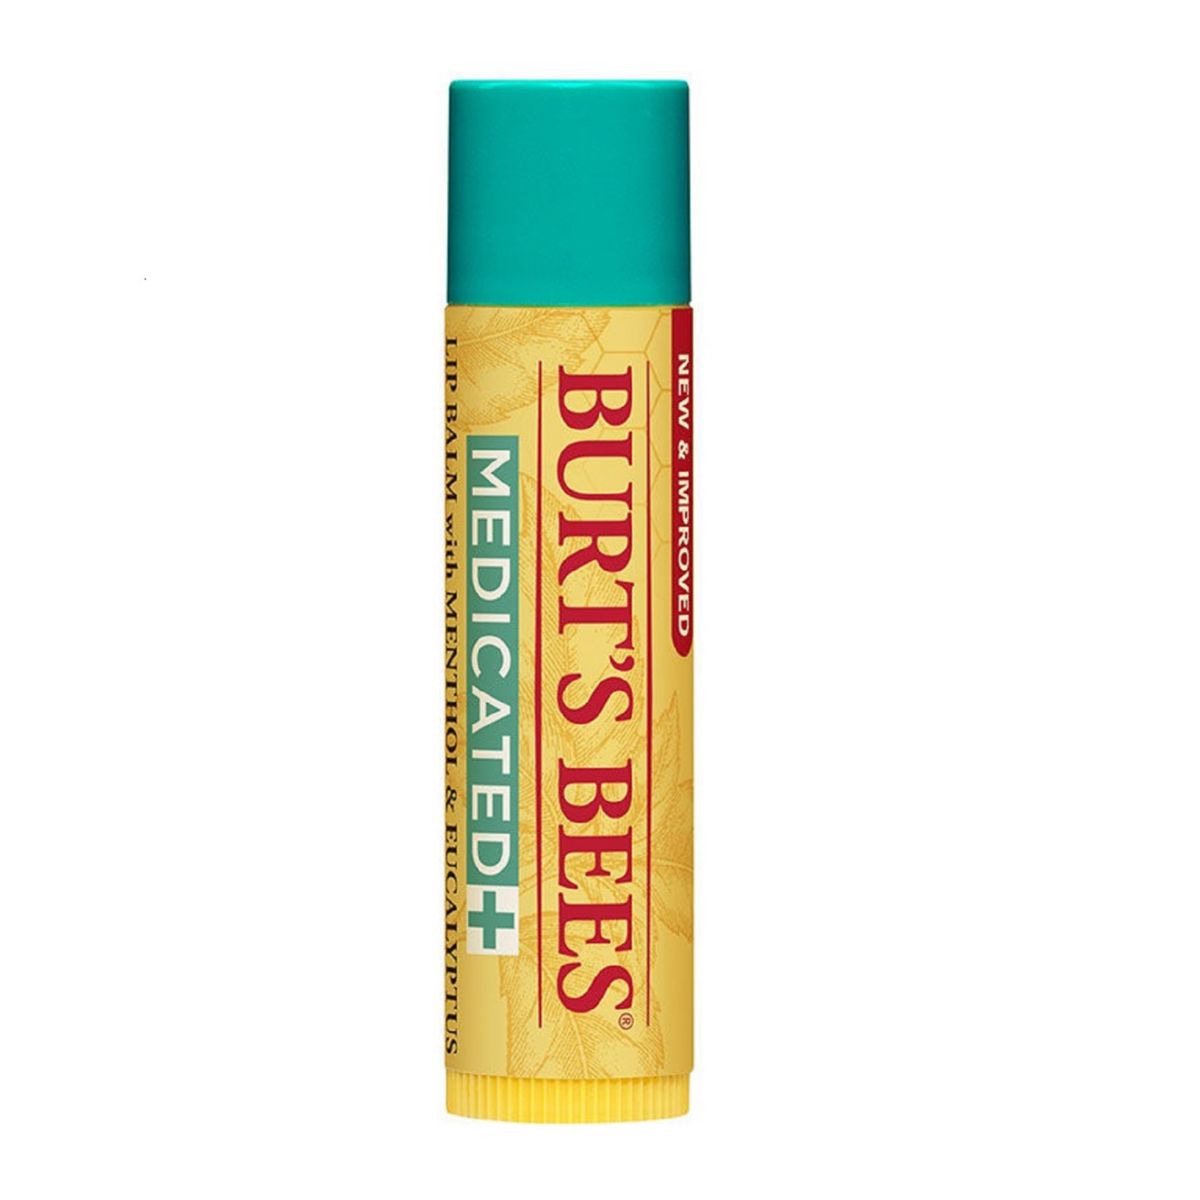 Натуральный лечебный увлажняющий бальзам для губ с ментолом и эвкалиптом Burt's Bees BURT'S BEES